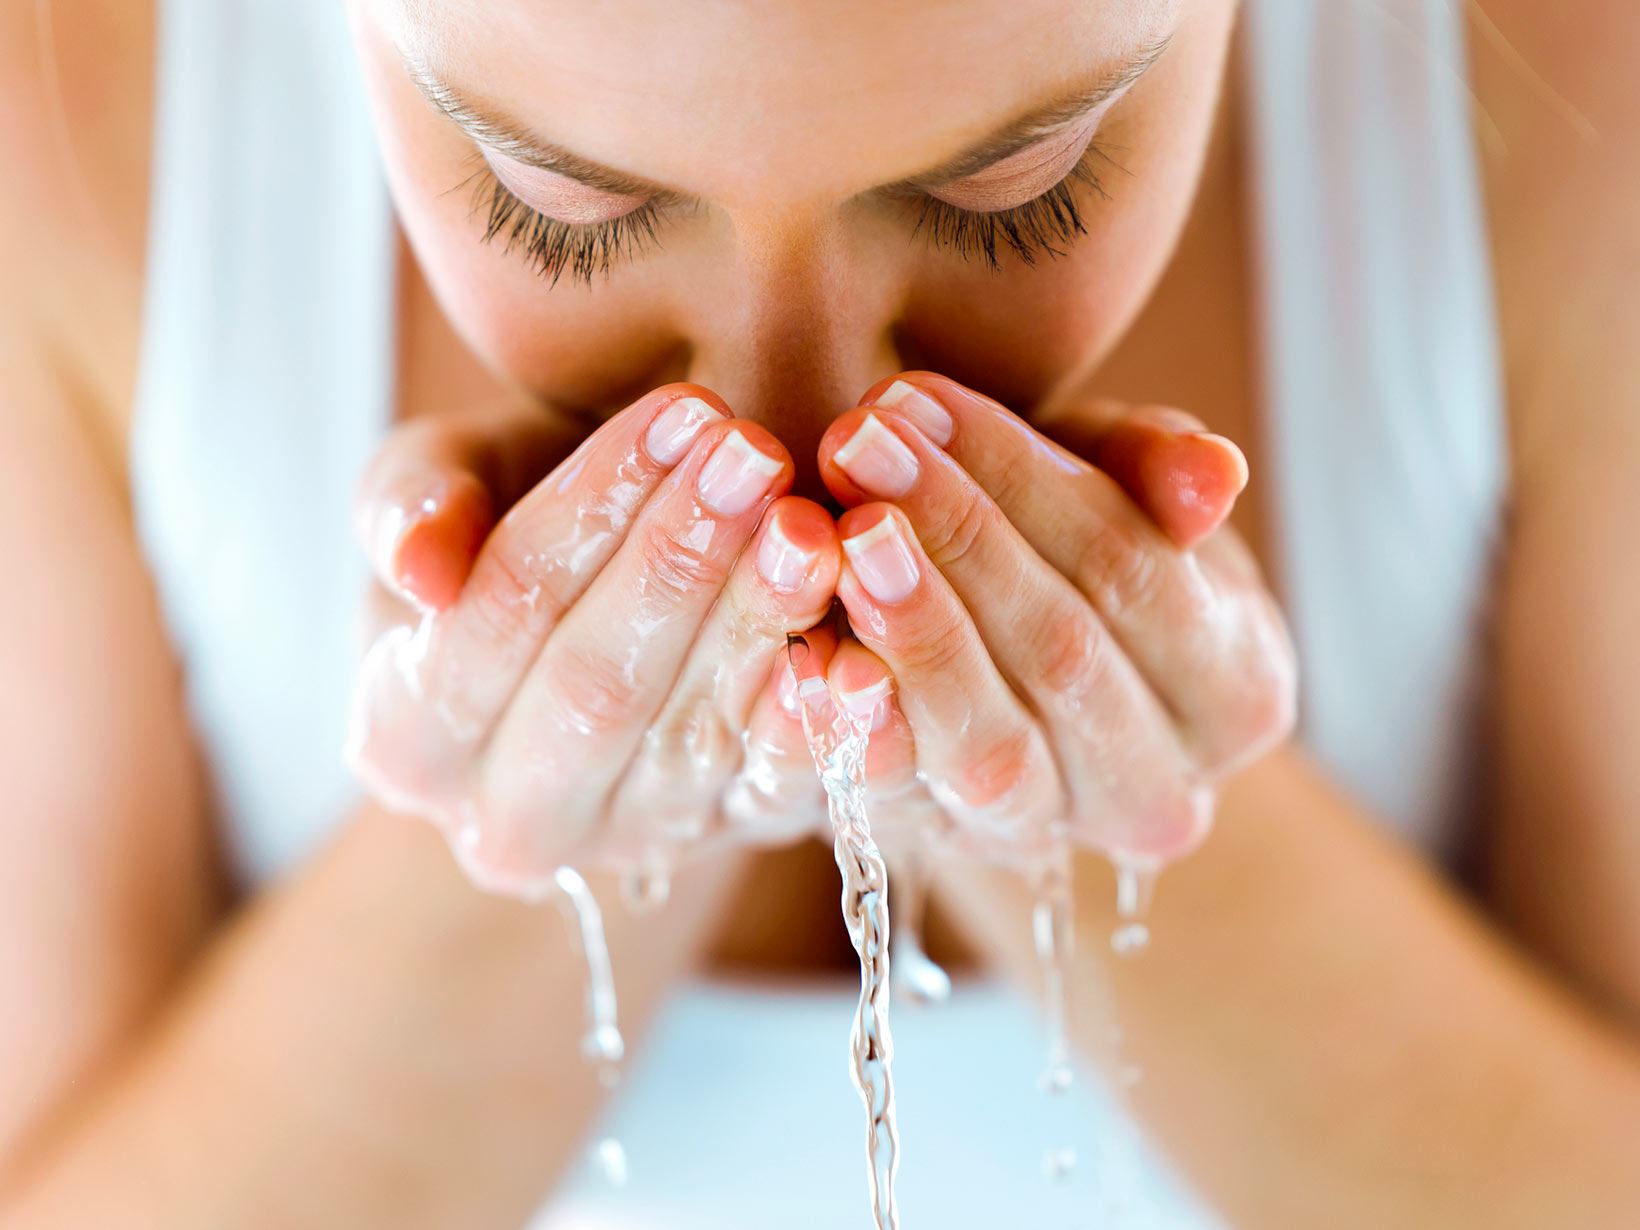 Acqua fredda o calda per lavare il viso